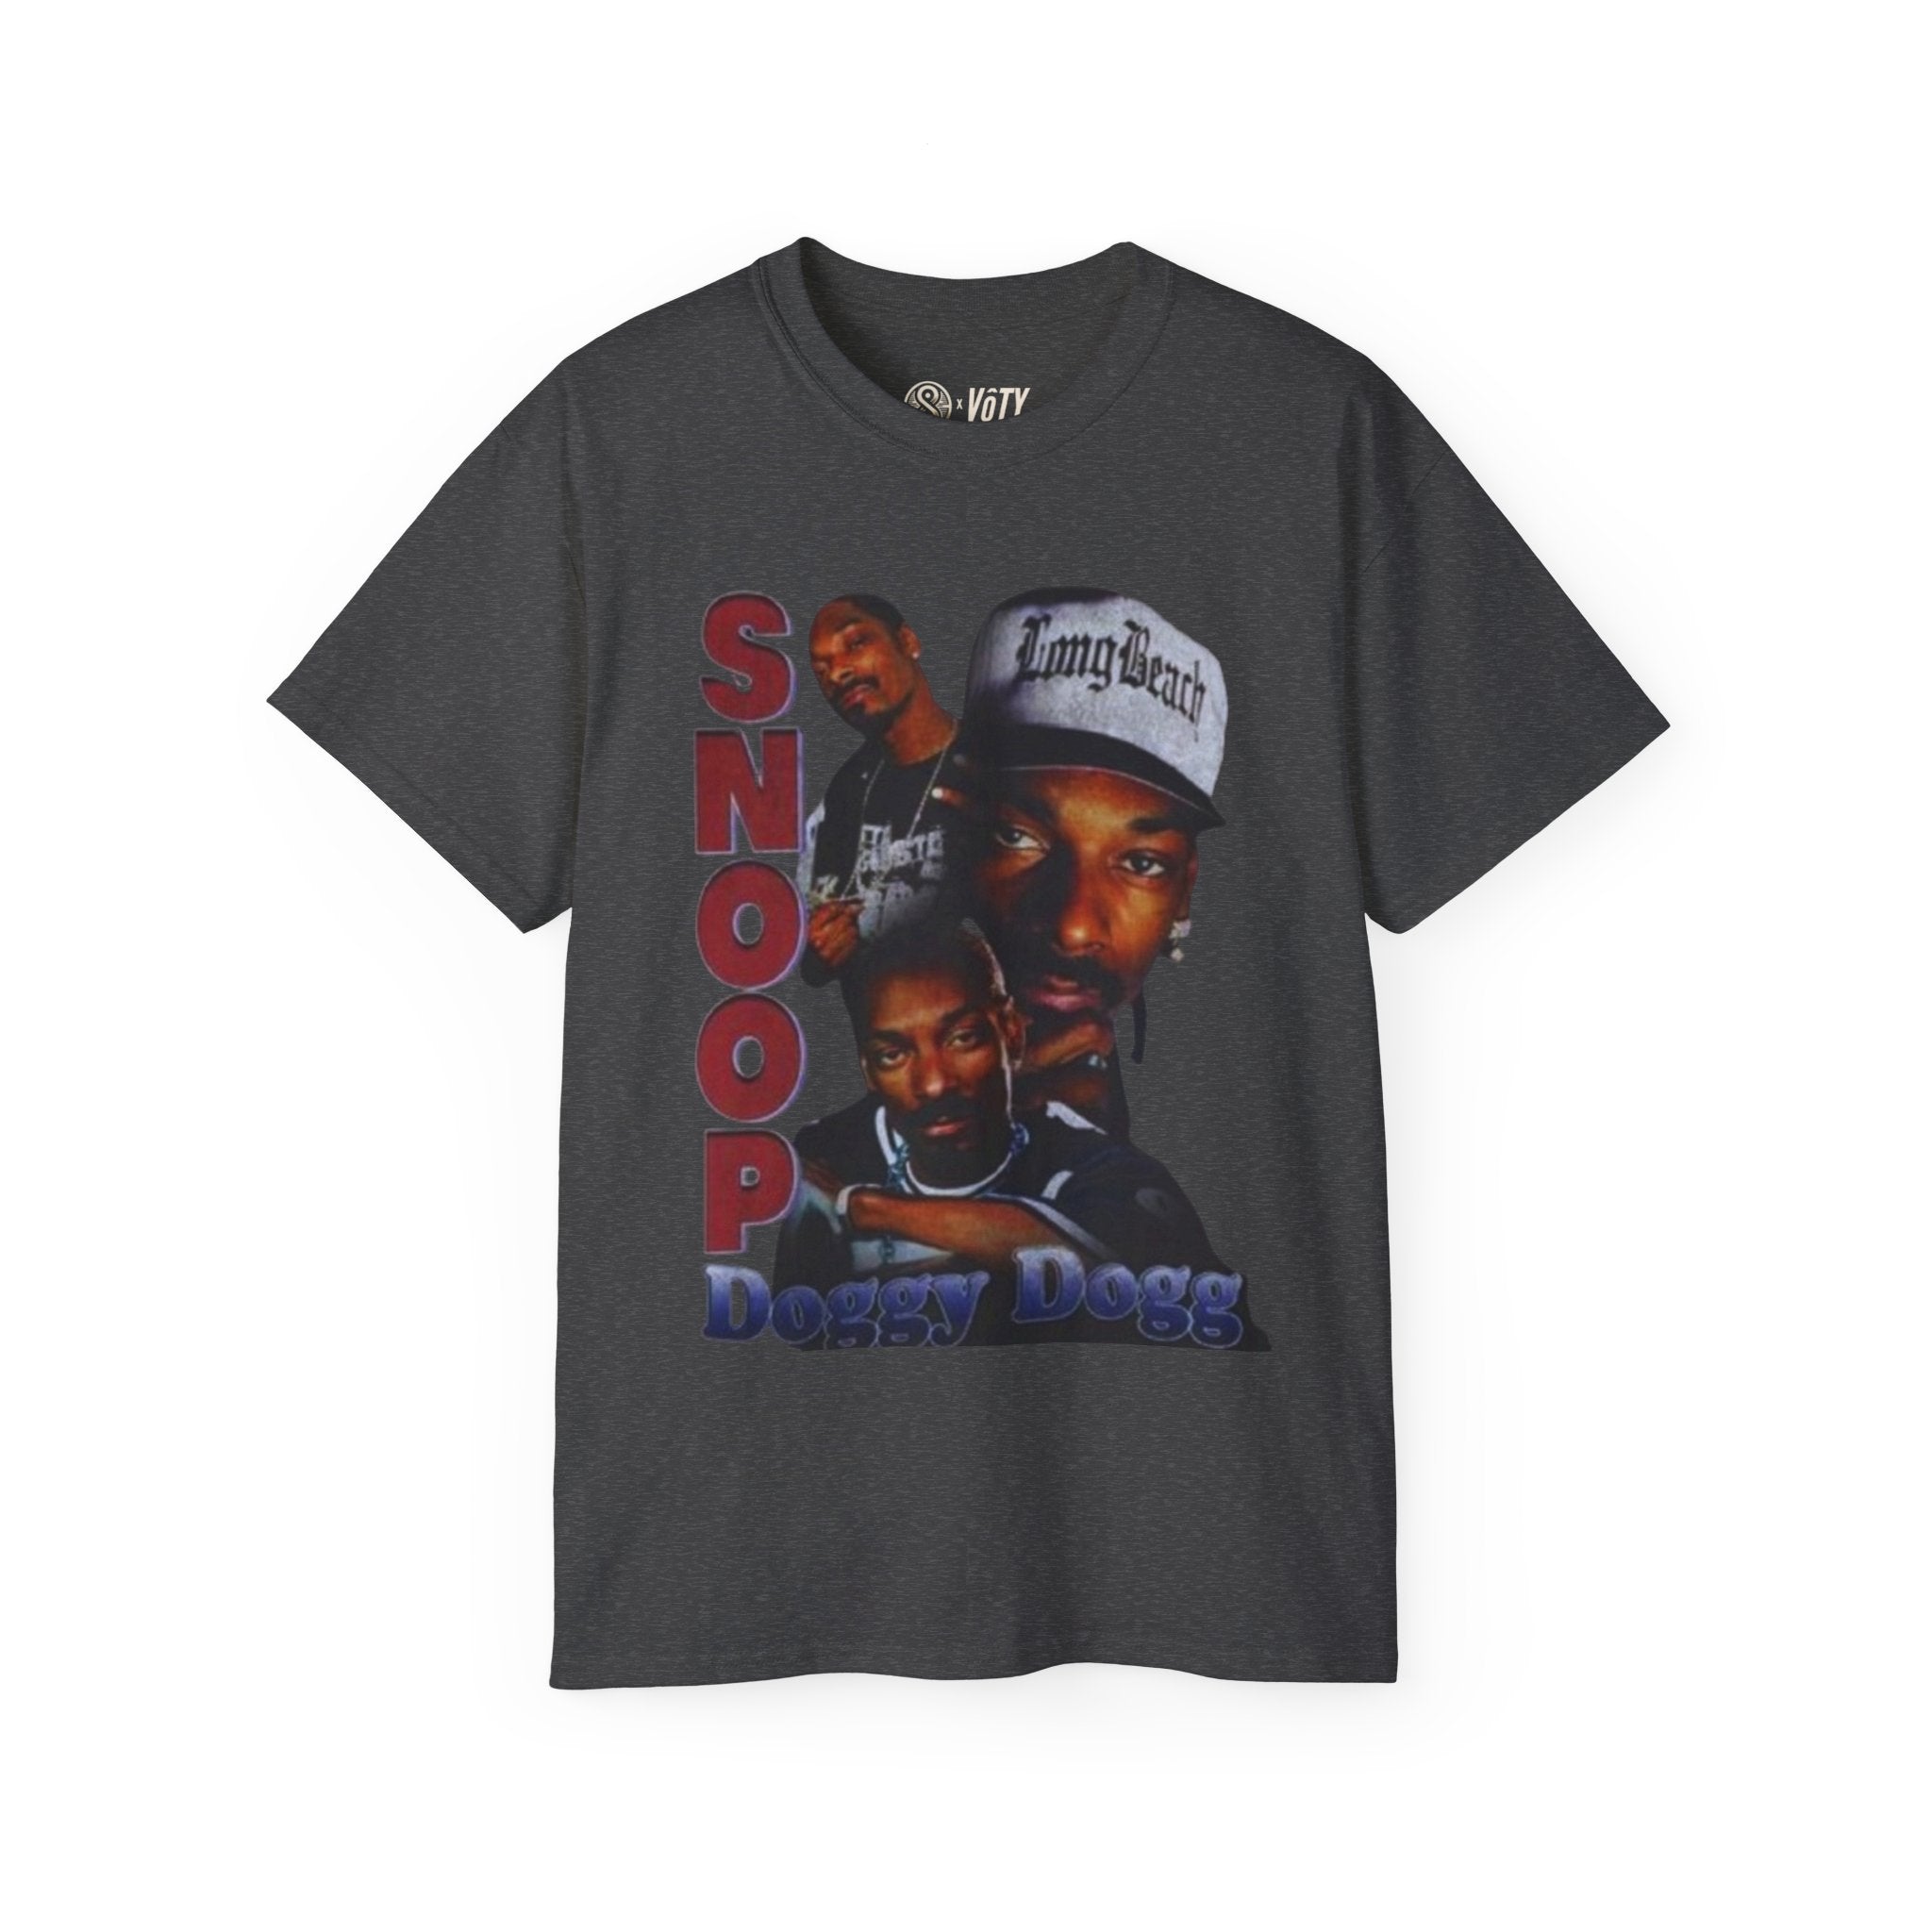 Snoop Dogg "Long Beach" T-Shirt